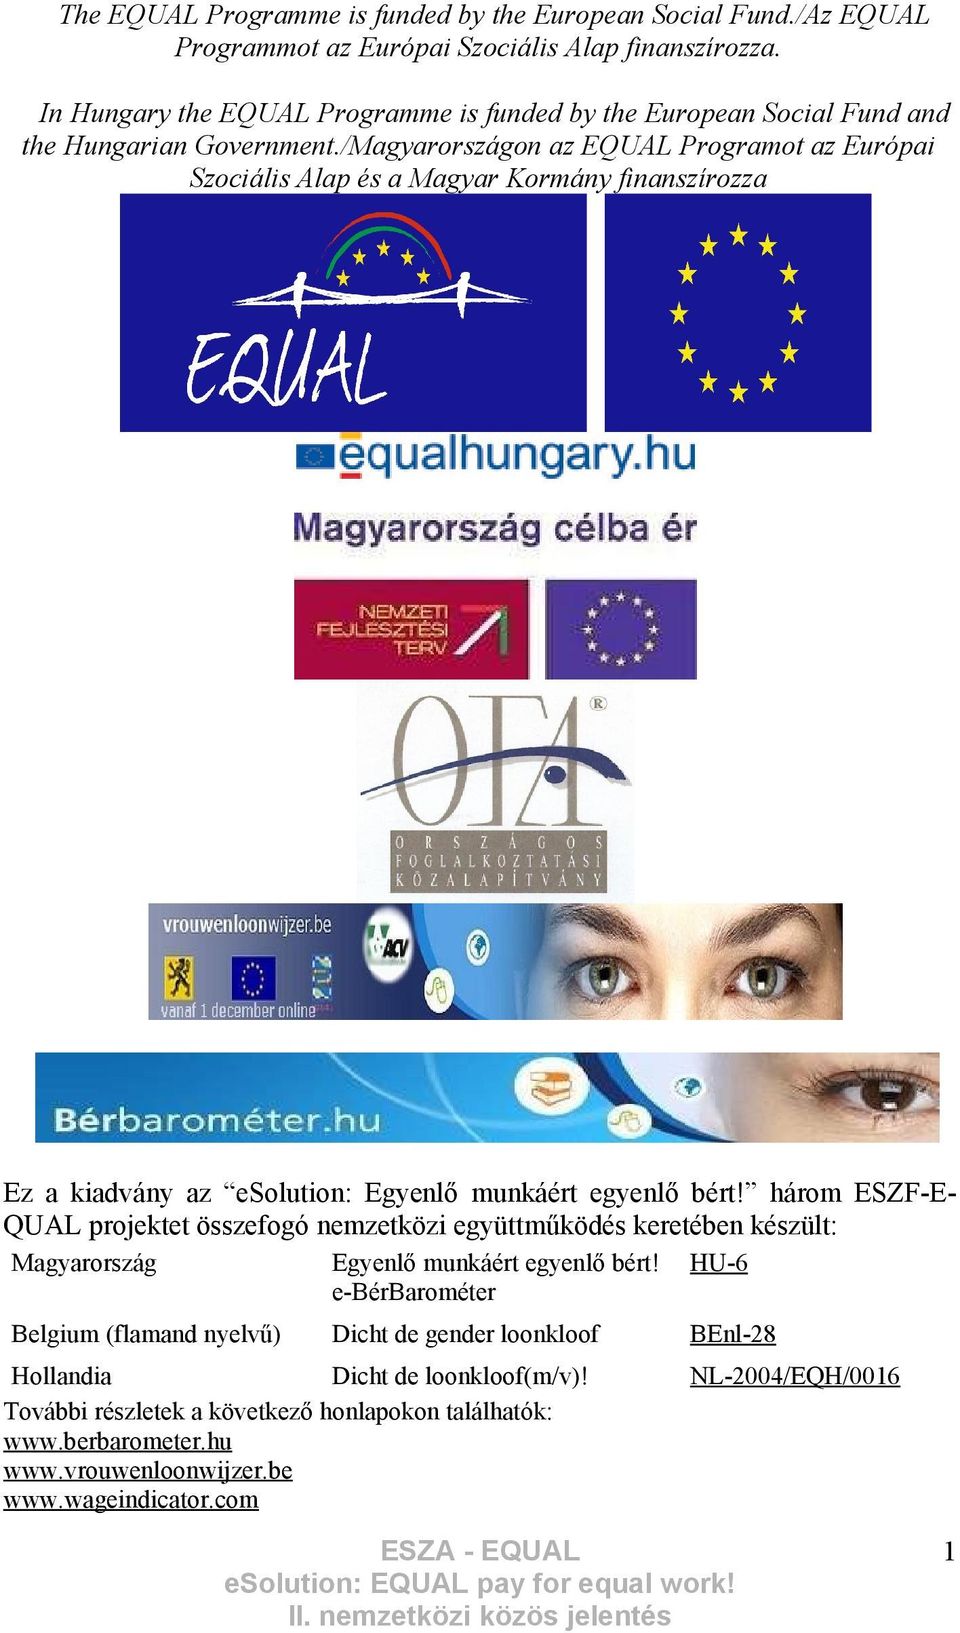 /Magyarországon az EQUAL Programot az Európai Szociális Alap és a Magyar Kormány finanszírozza Ez a kiadvány az esolution: Egyenlő munkáért egyenlő bért!